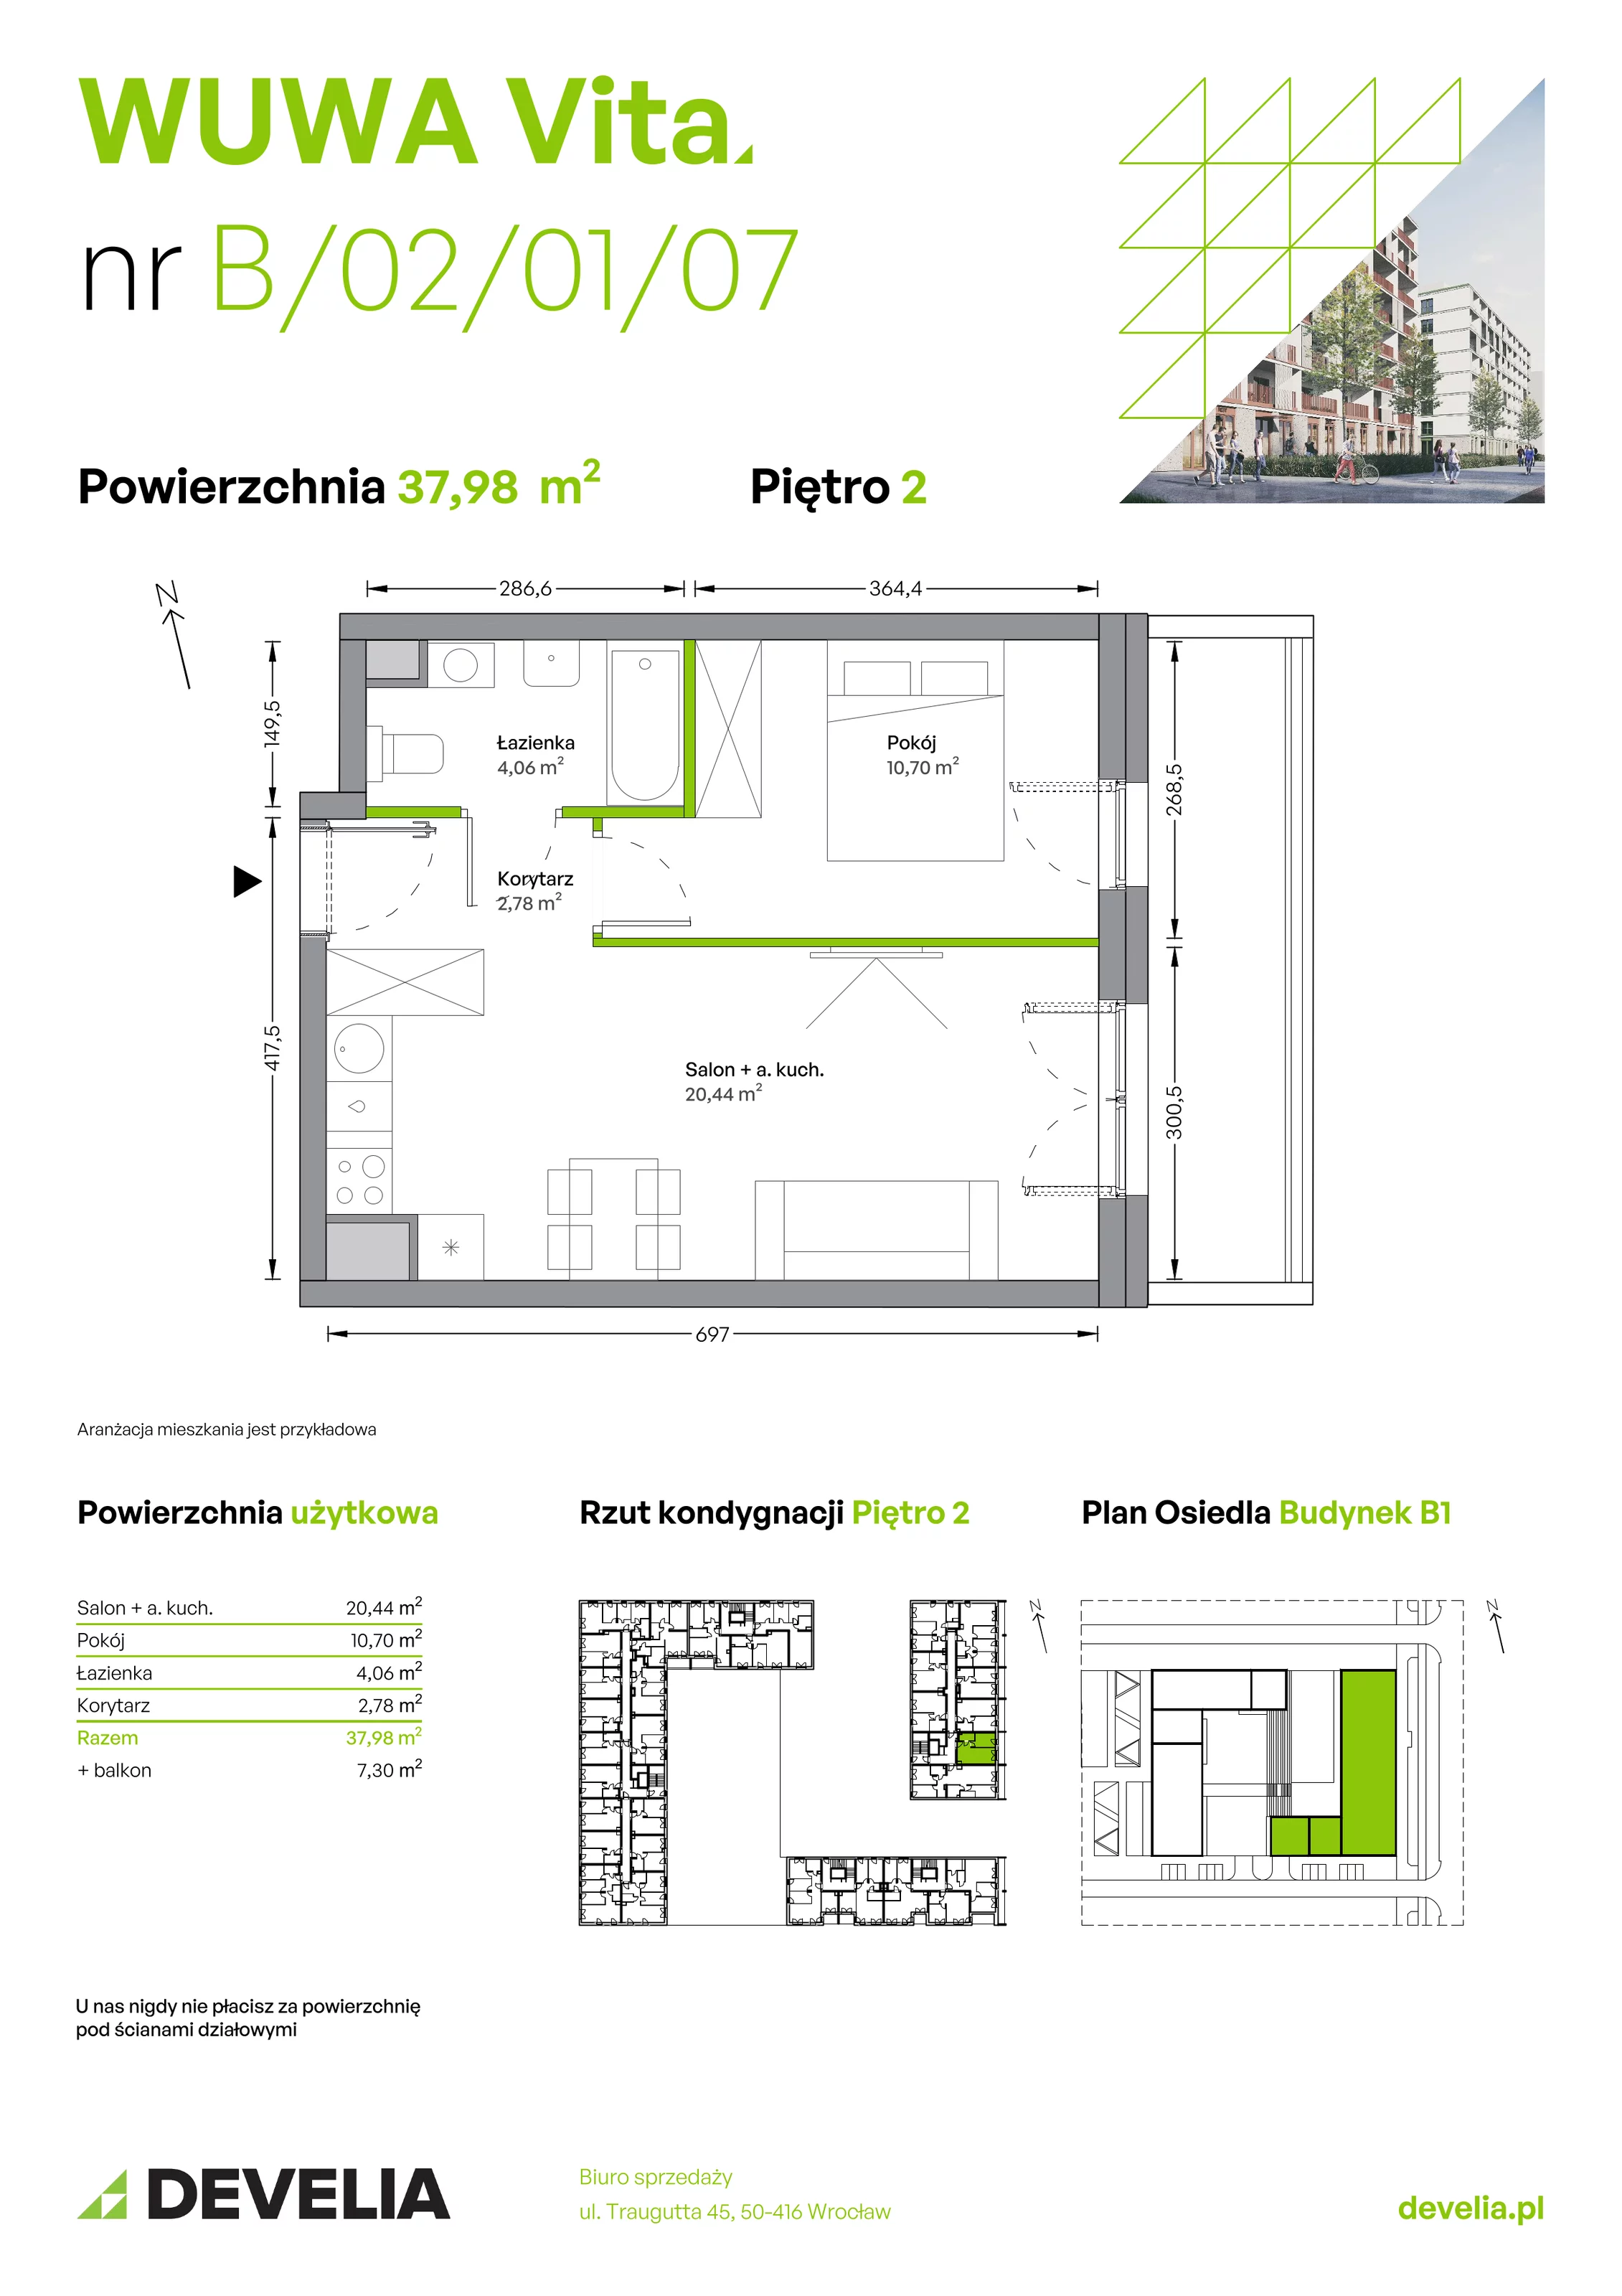 Mieszkanie 37,98 m², piętro 2, oferta nr B.02.01.07, WUWA Vita, Wrocław, Żerniki, Fabryczna, ul. Tadeusza Brzozy